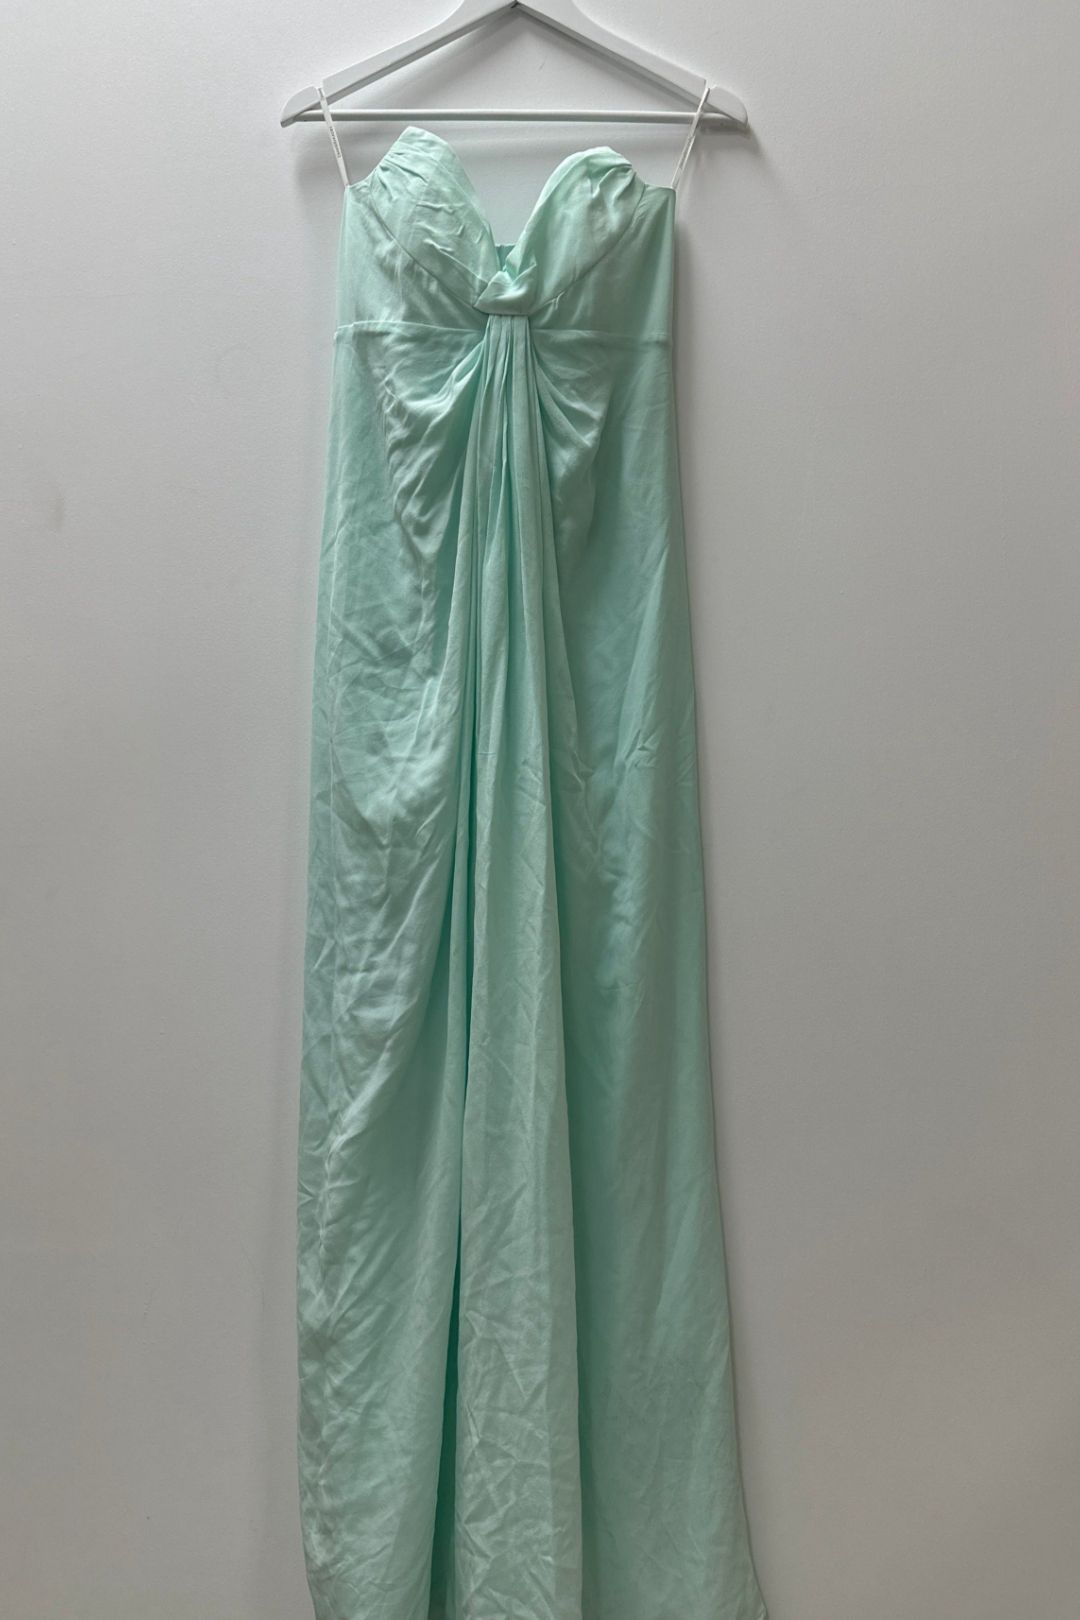 Zimmermann Strapless Floor Length Dress in Mint